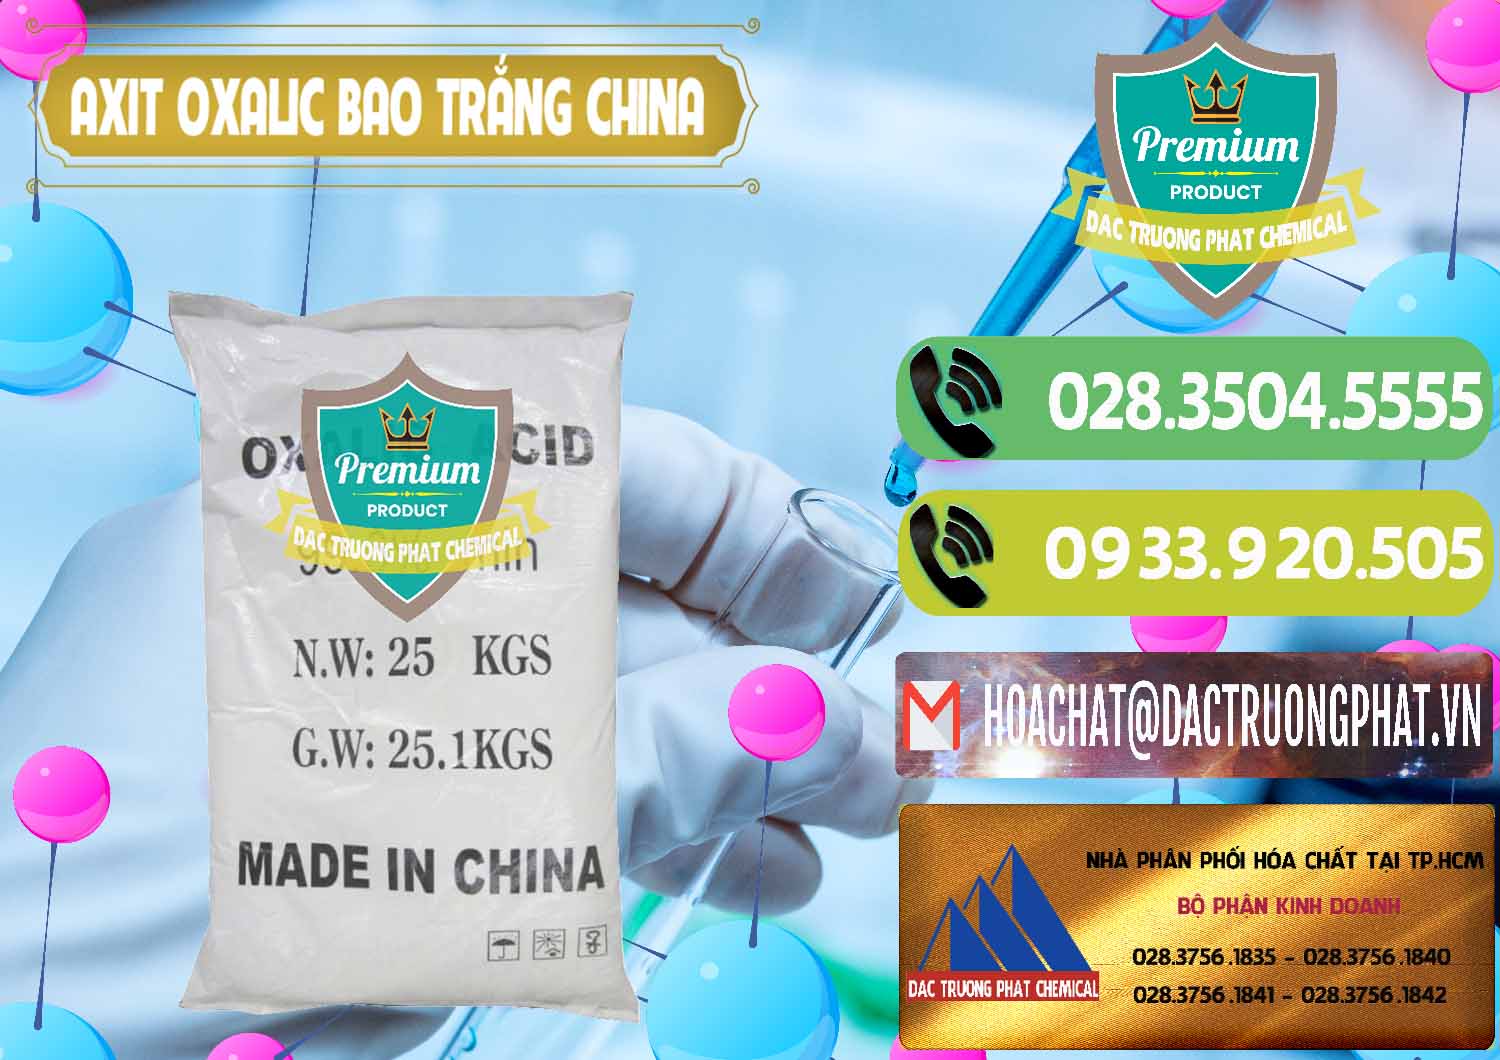 Phân phối ( bán ) Acid Oxalic – Axit Oxalic 99.6% Bao Trắng Trung Quốc China - 0270 - Công ty cung cấp - phân phối hóa chất tại TP.HCM - hoachatmientay.vn